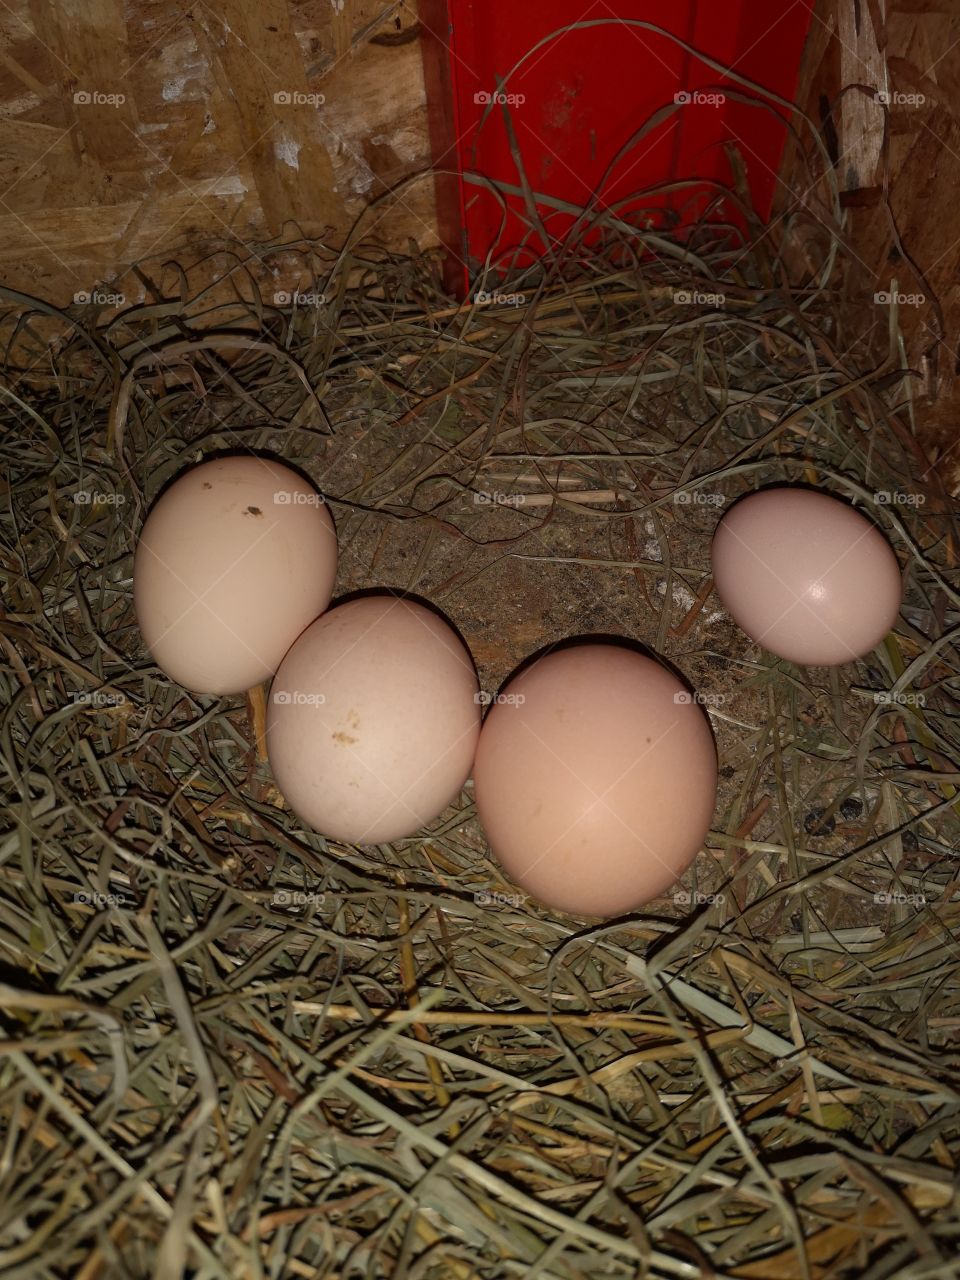 Fresh Farm Eggs